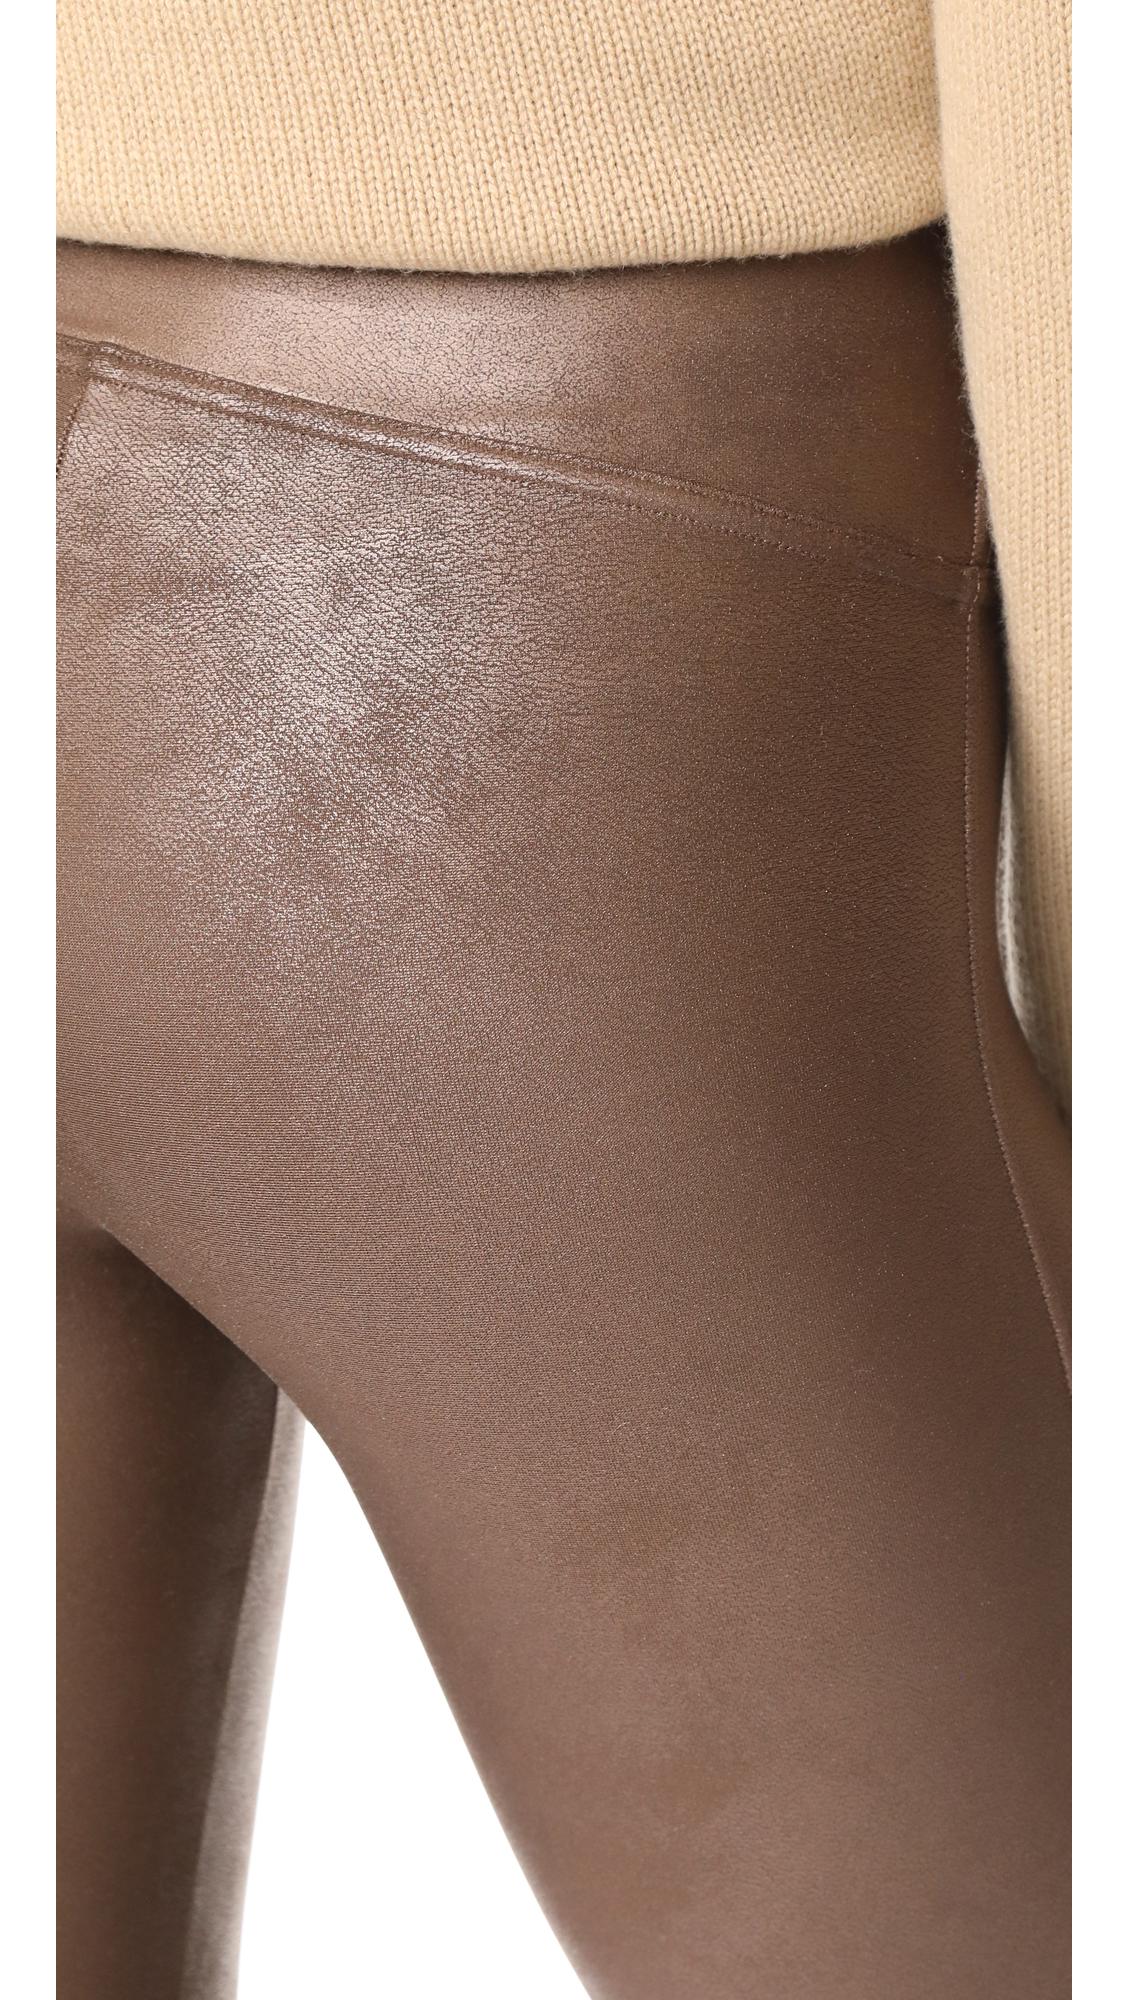 Spanx brown leggings